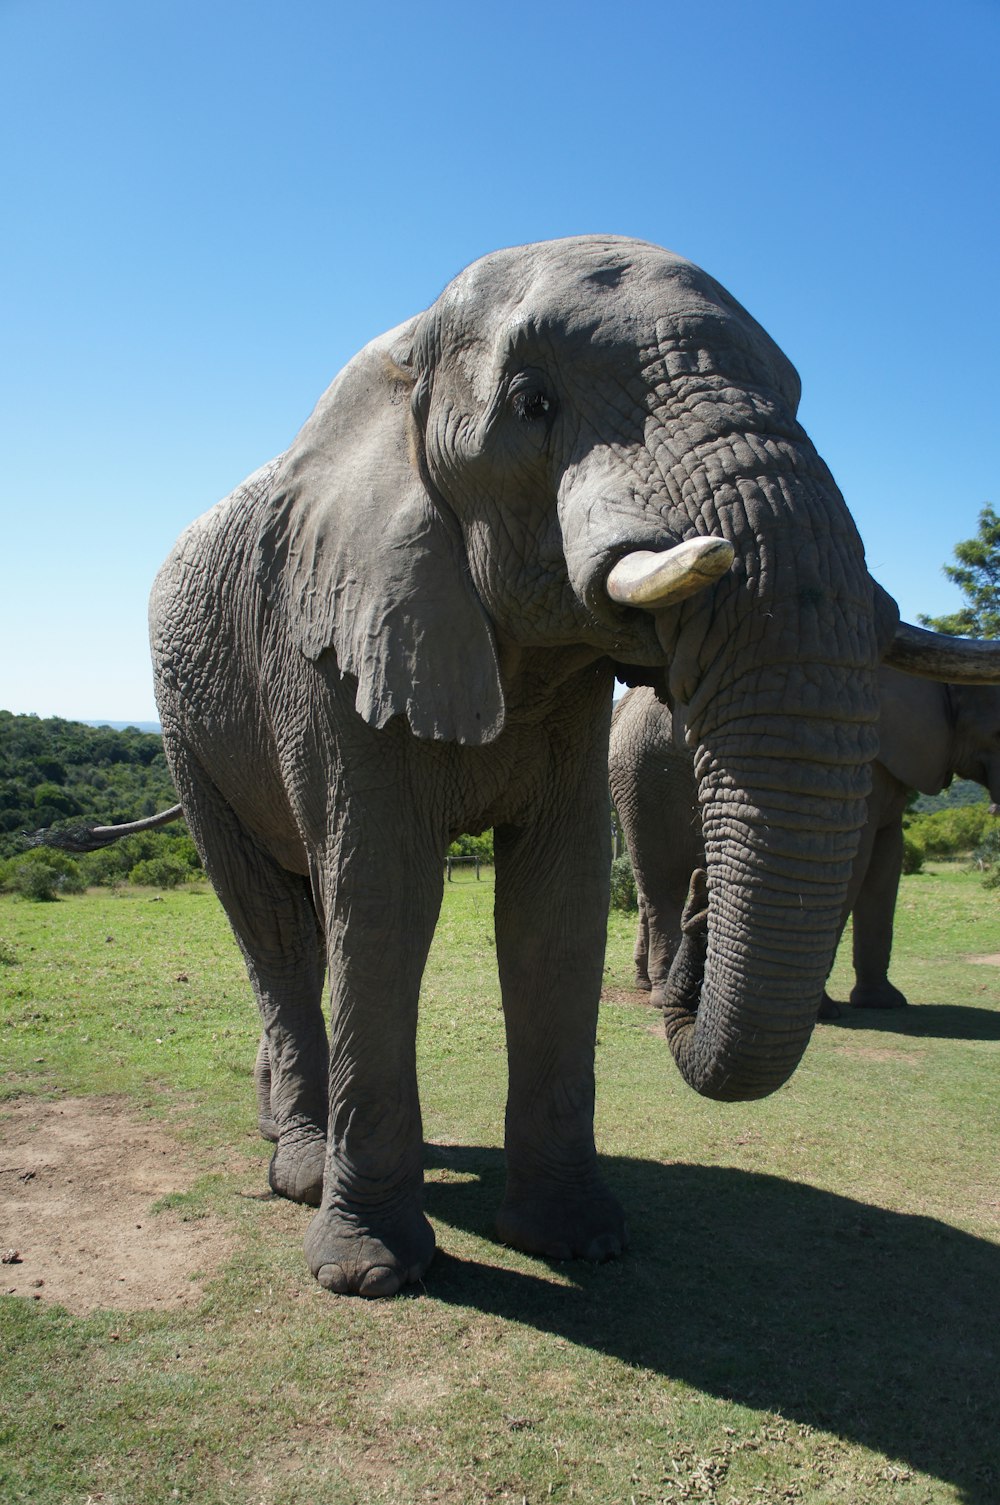 elefante cinzento no campo verde da grama durante o dia